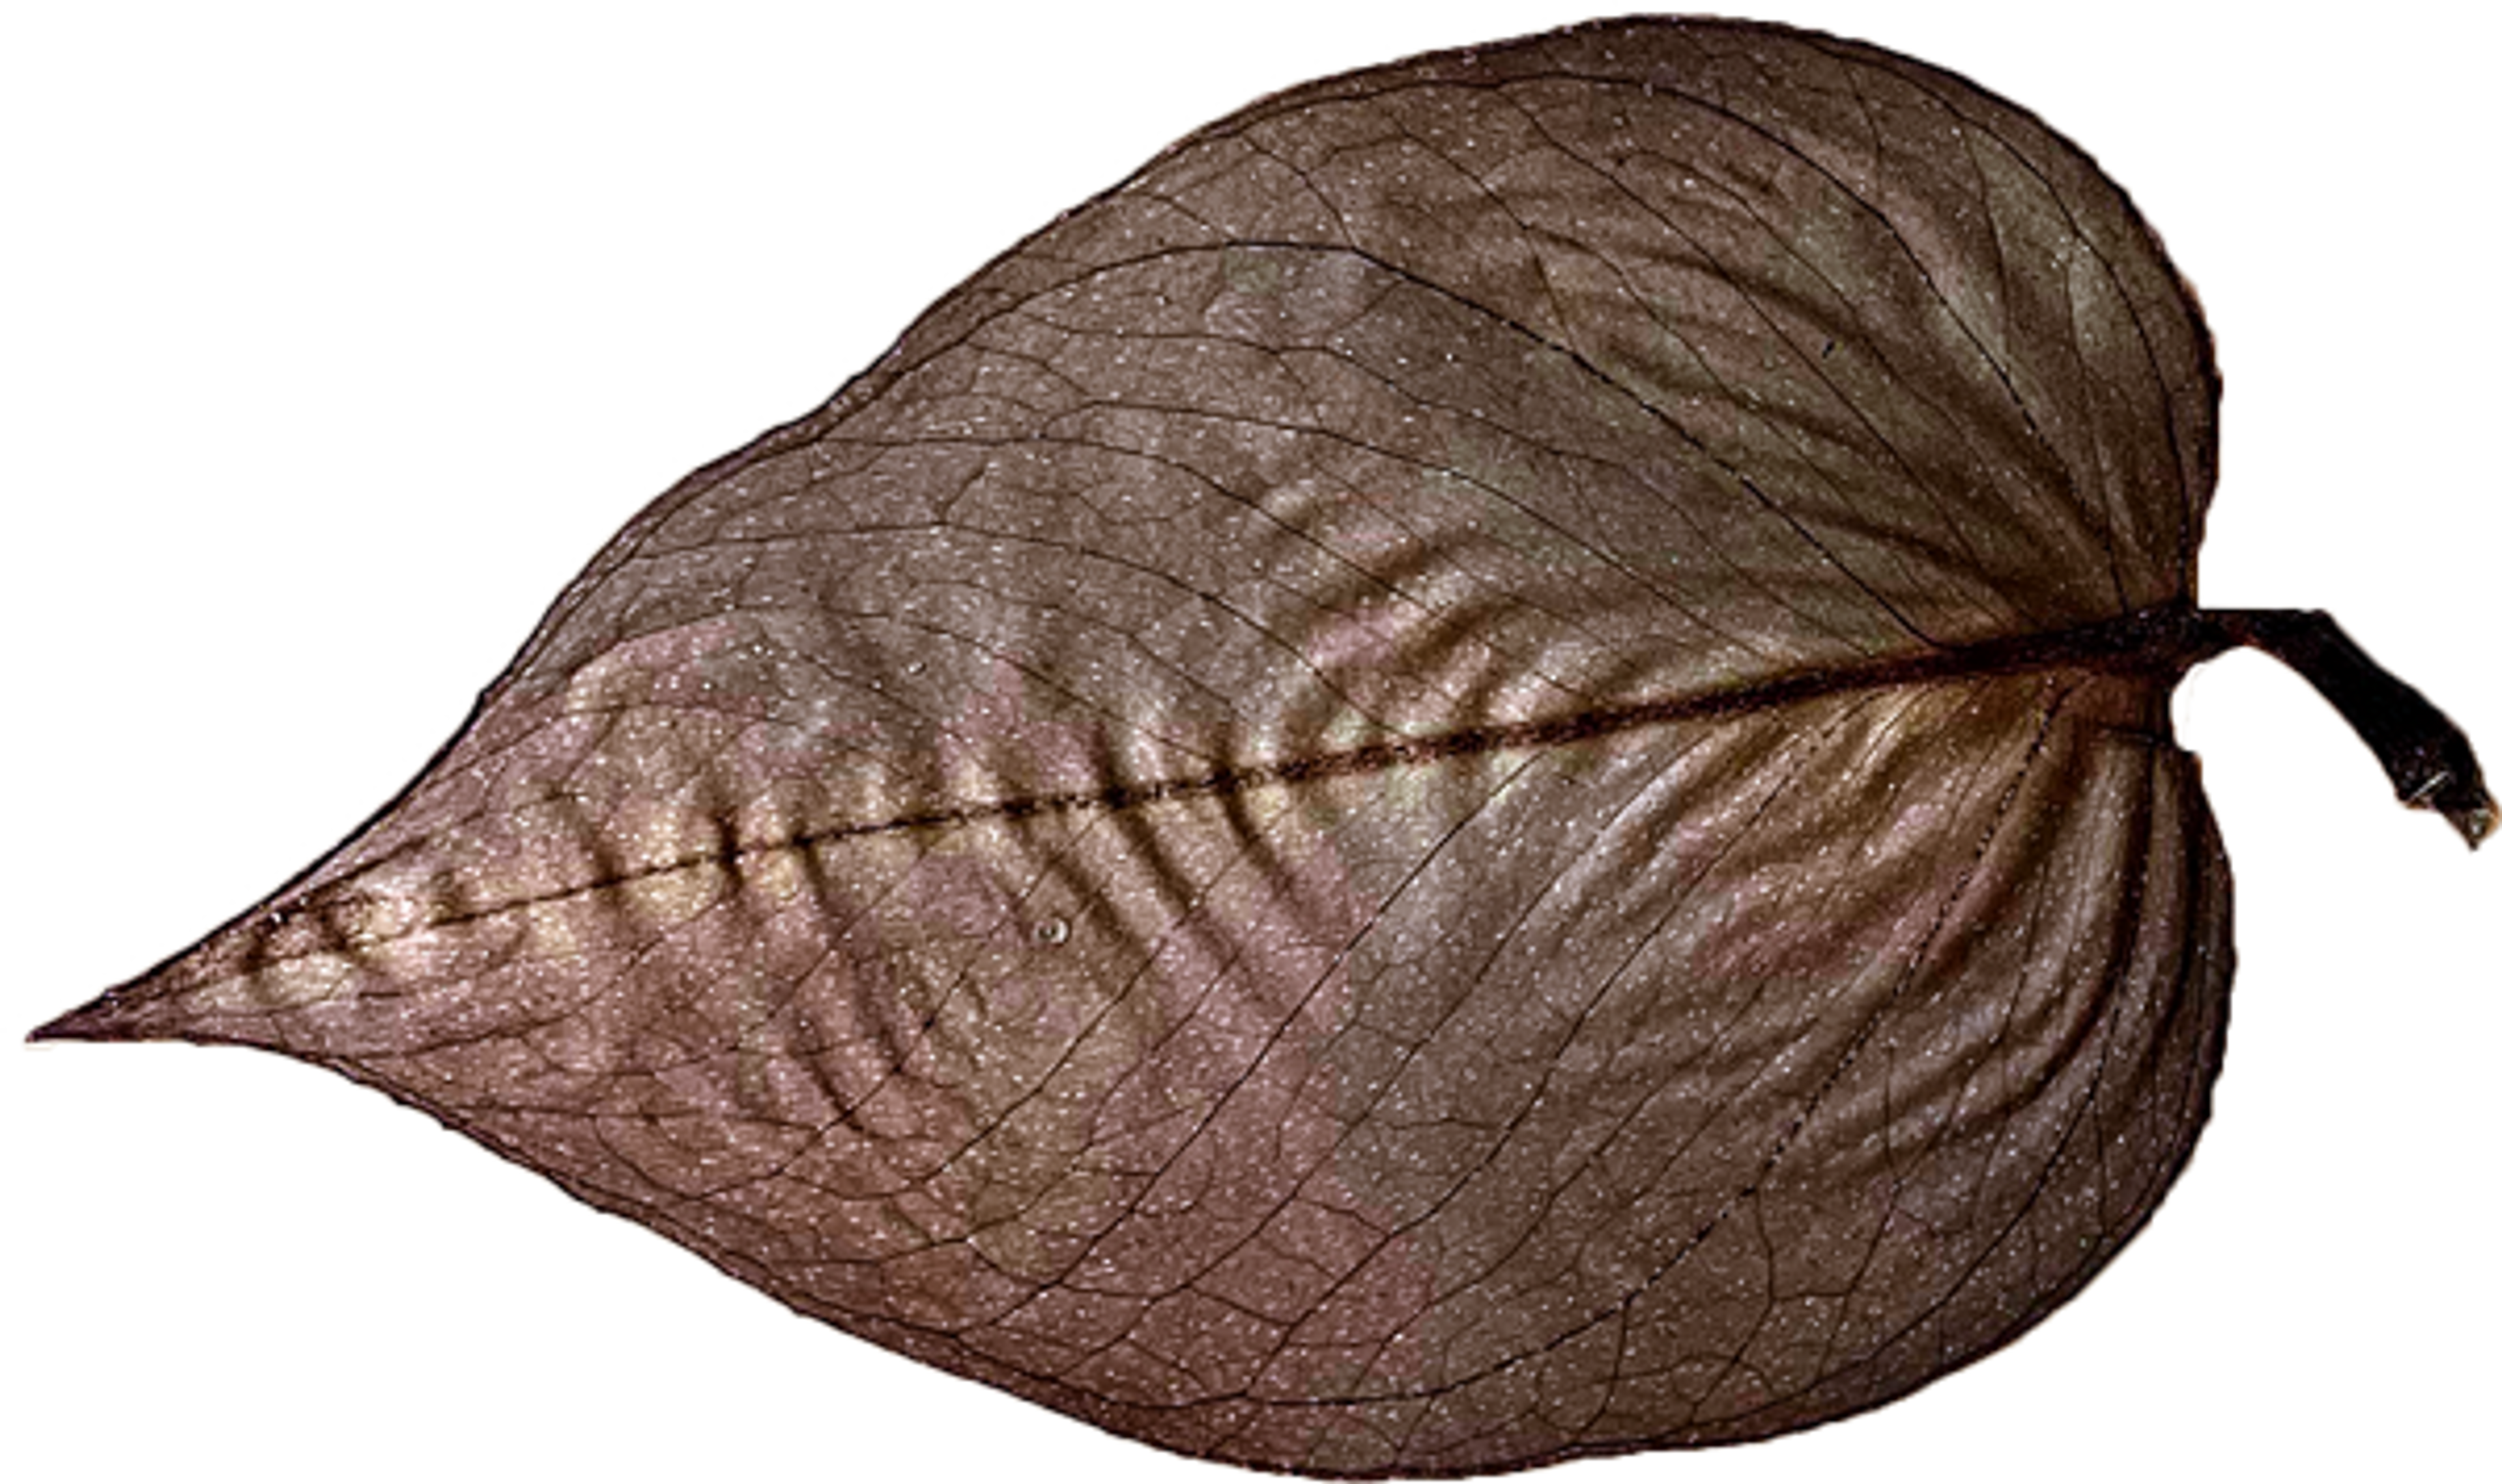 A pressed leaf